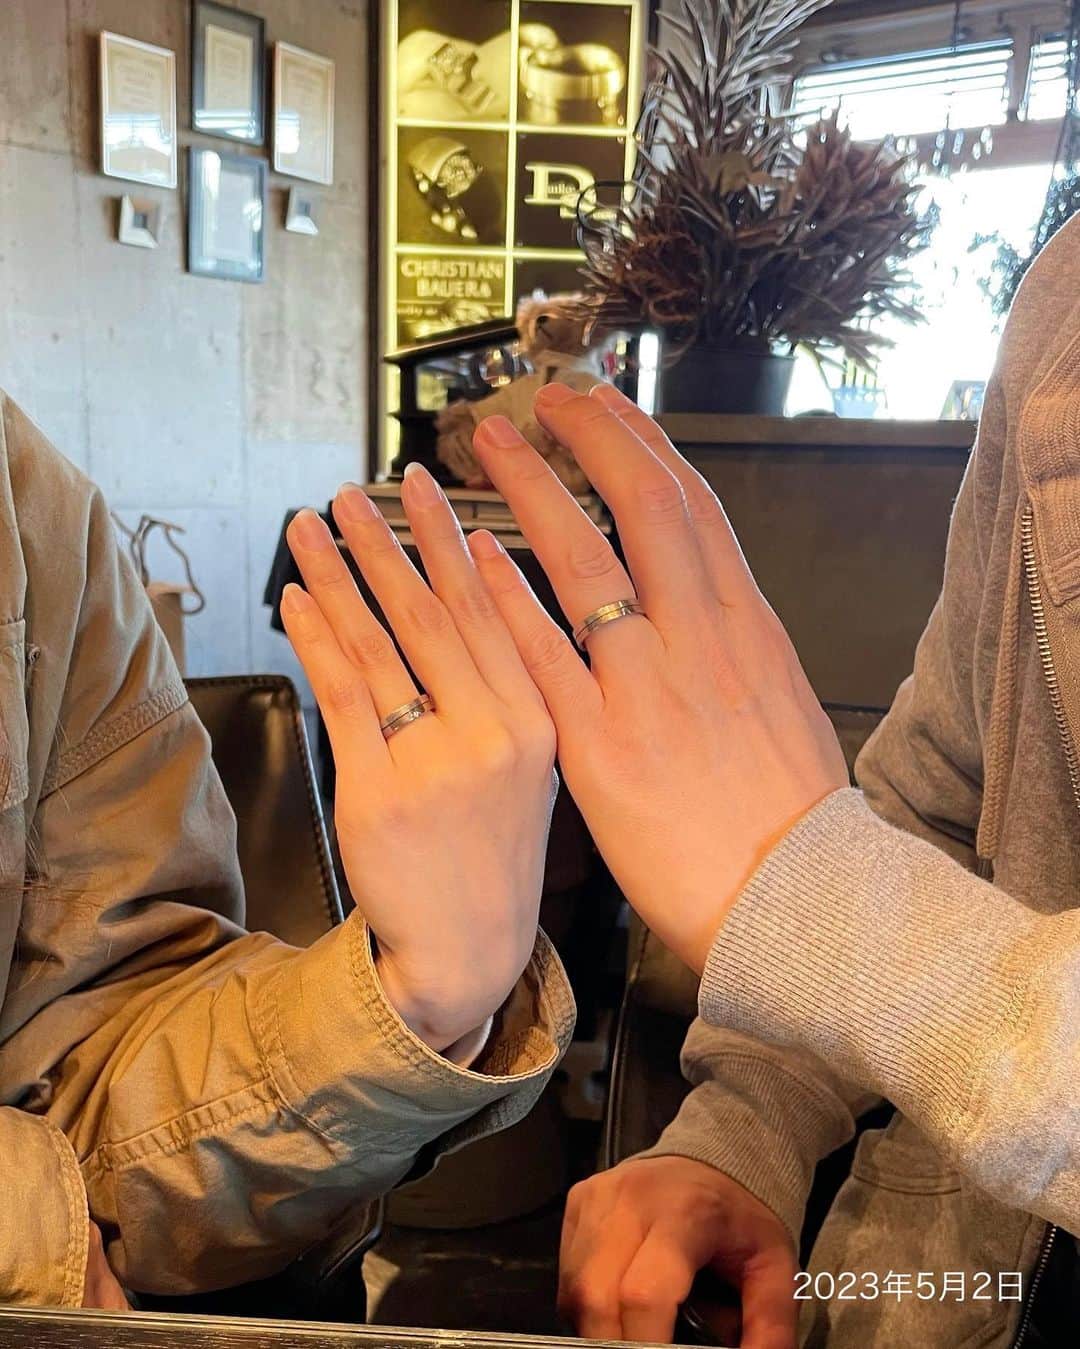 Danke schön ダンケ 金沢 結婚指輪 鍛造さんのインスタグラム写真 - (Danke schön ダンケ 金沢 結婚指輪 鍛造Instagram)「・ ・ 今日のバウアーさんは 久しぶりの🤭 ・ ・ 「あれから…」シリーズ ・ ・ 今回は愛用歴3年の御夫婦が 指輪の洗浄…と言うより 奥さんの…で🤭 ・ ・ 3年前の 「お引き渡しの儀」以来の再会 ・ ・ ドア開き顔見た瞬間から 3年前の続きのように ・ ・ あーでもない こーでもない の あの時間に タイムスリップ ・ ・ いつもこうして 数年後・数十年後に再会しても みんな変わらず慕ってくれて ・ ・ 寧ろあの当時より 親近感が湧いてるかな？と 思うくらいに ・ ・ きっとそれは 選び抜いた指輪に対して 自信を持っているからだと思う ・ ・ そして、何よりこうして 再会してでも話題が尽きないのは ・ ・ やっぱり指輪を選び抜くまでの間に どれだけ会話をしたかだと思う。 ・ ・ 「売ります！」「買います！」だけの関係性ならば ・ ・ きっとこんな愛用歴シリーズの写真は 撮影出来なかっただろうなぁって思うのです。 ・ ・ だってみんな自分の指輪が 1番だと思っているし👍🏻 ・ ・ どうやら 撮影して欲しいらしい…🤭 （カメラは素人の店主なのに🤔） ・ ・ 指輪に小傷が入って 喜べるなんてなかなか マニアなDankeのお客様達です。 ・ ・ 旦那さんは再会していた時間に 何度も何度も話してくるた言葉 ・ ・ それは ・ ・ 1番最初にバウアーを見た時は 正直！価格にもびっくりしたけど ・ ・ この指輪に対して一度も後悔した事が無い。 寧ろ今は満足しなかいし 買って良かったとつくづく思うって ・ ・ 形あるモノをお引き渡しする者として 最高の褒め言葉を頂きながら再会🤝 そしてお約束の記念撮影 ・ ・ 📷2お引き渡しの儀の日 📷3今回同じ構図で記念撮影 この御夫妻手が似てませんか？ そっくり…どっちがどっち⁈と言うくらいに ・ ・ しかも構図までバッチリ！ ・ ・ これからは3の倍数でここに来て 記念撮影する？と ・ ・ こう言う時間も含めて 御夫婦にとっての『真円物語』がまだまだ続く ・ ・ 店に来る😁口実らしいです🤭 そんな口実がなくてもいつでも 皆さん寄ってくださいね。 ・ ・  【鍛造削り出し】 🇩🇪クリスチャンバウアー 専門店 ・ ・ ワンランク上をいくノウハウの クリスチャンバウアーの選び方なら 『Danke schön 』 ・ ・ ・ —— 𝐃𝐚𝐧𝐤𝐞——— ▪︎ Instagramプロフィール 🔜 @danke2005  —————————————————————𝐒𝐜𝐡⍥𝐧——— ・ ・ #クリスチャンバウアー金沢 #鍛造指輪 #鍛造リング #結婚指輪 #結婚指輪オーダー #切削加工 #結婚指輪探し #結婚指輪選び #指輪探し #指輪選び #マリッジリング #結婚指輪金沢 #金沢結婚指輪 #セカンドリング #結婚指輪買い替え #地金屋鍛造 #ブライダルリング #結婚記念日 #ベビーリング #ドイツリング #自分へのご褒美   ------------------------------------------✈︎ ---------  鍛造削り出し 🇩🇪クリスチャンバウアー 専門店 『𝐃𝐚𝐧𝐤𝐞 𝐬𝐜𝐡⍥𝐧』 ・ • 営業時間 am11:00〜pm9:00 • 定休日 : 木曜日 • 駐車場 : 店舗前OK • ご予約 : 優先 ・ ・ ——𝐃𝐚𝐧𝐤𝐞——————————————— ▪︎トップページ 🔜 @danke2005 ———————————————————-𝐒𝐜𝐡⍥𝐧—————」5月3日 19時53分 - danke2005